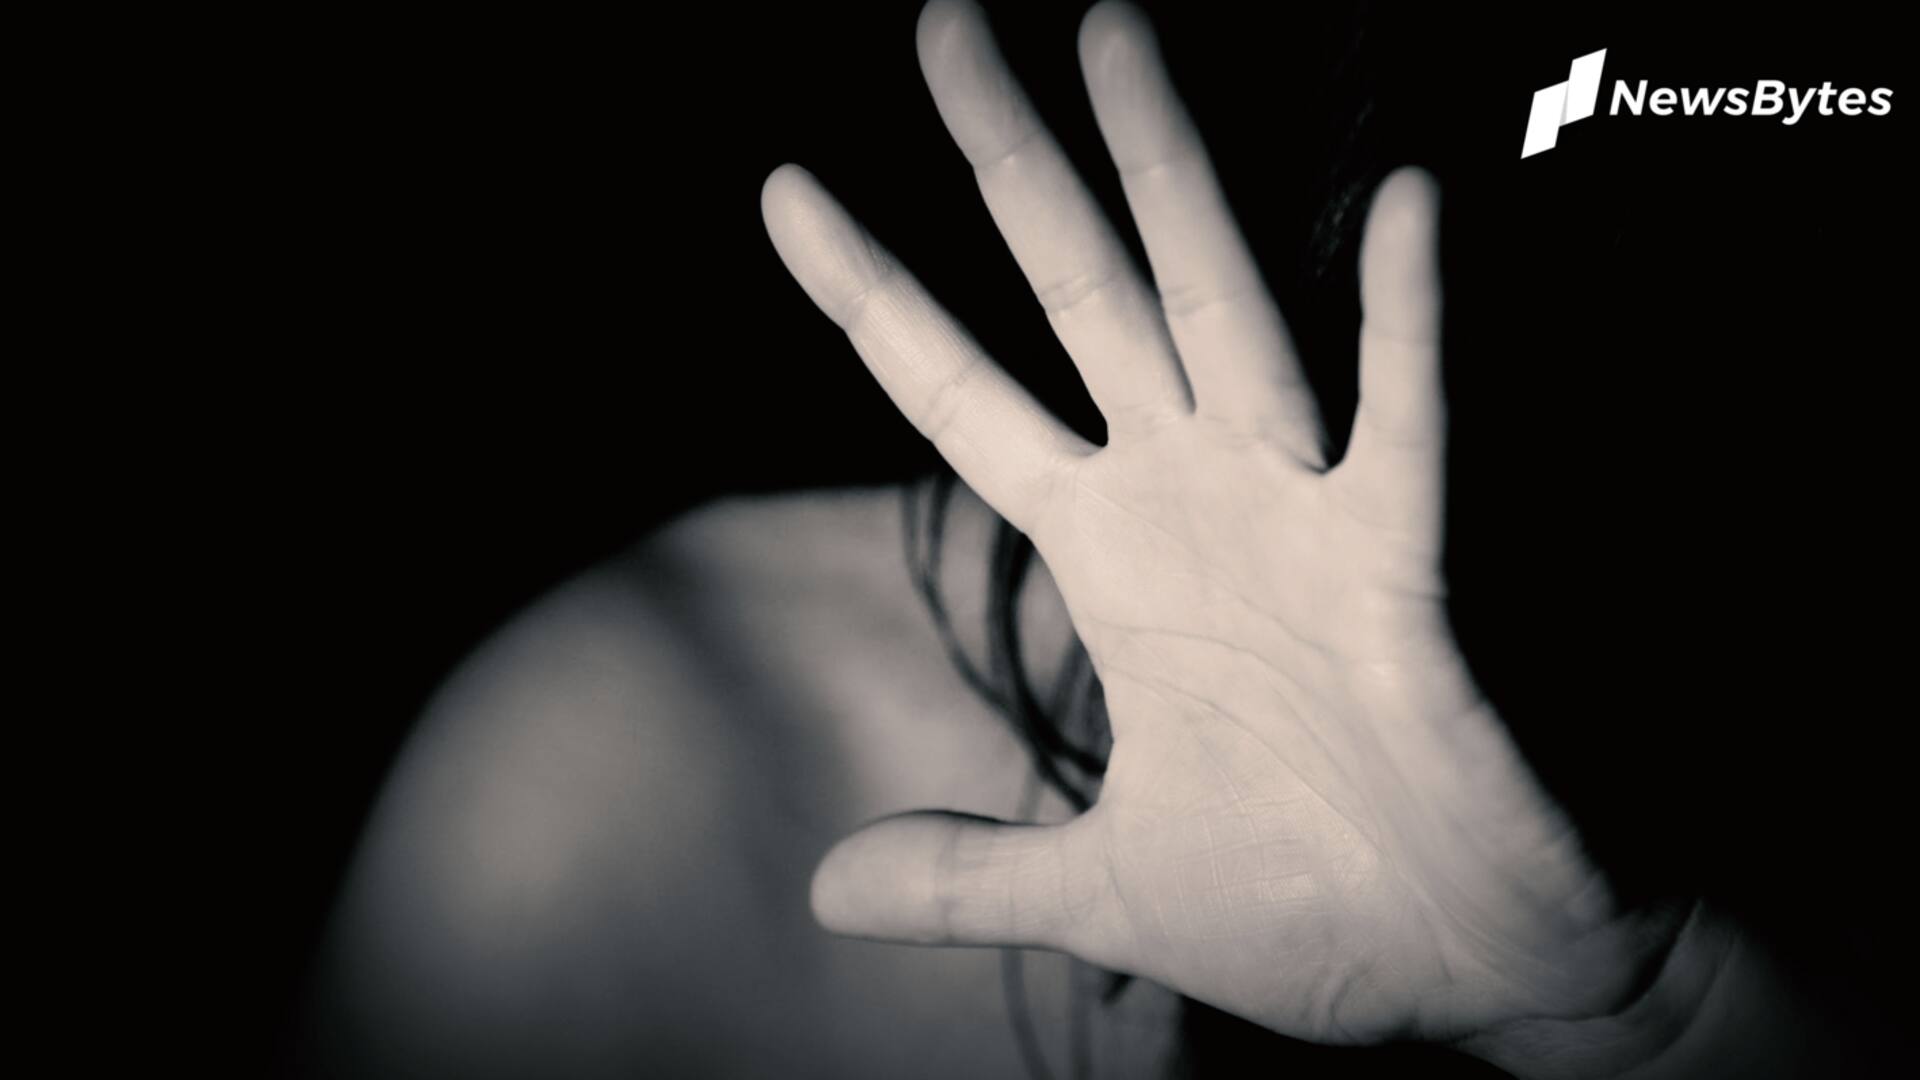 मुंबई: छात्रा के यौन उत्पीड़न के आरोपी ने उसी दिन 4 अन्य महिलाओं से की थी छेड़छाड़